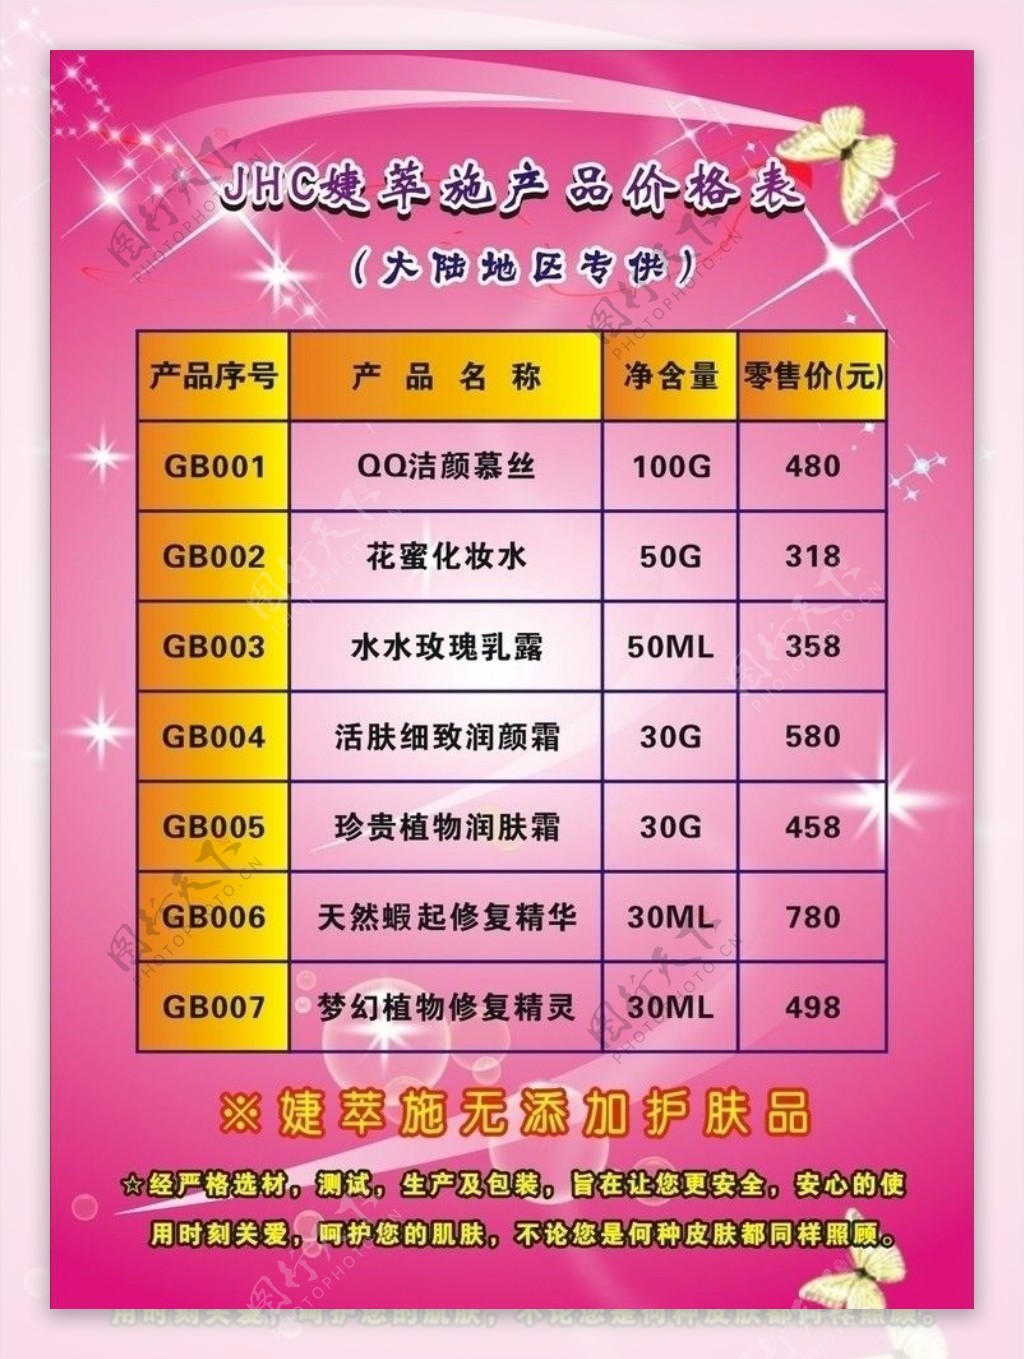 JHC婕萃施产品价格表图片